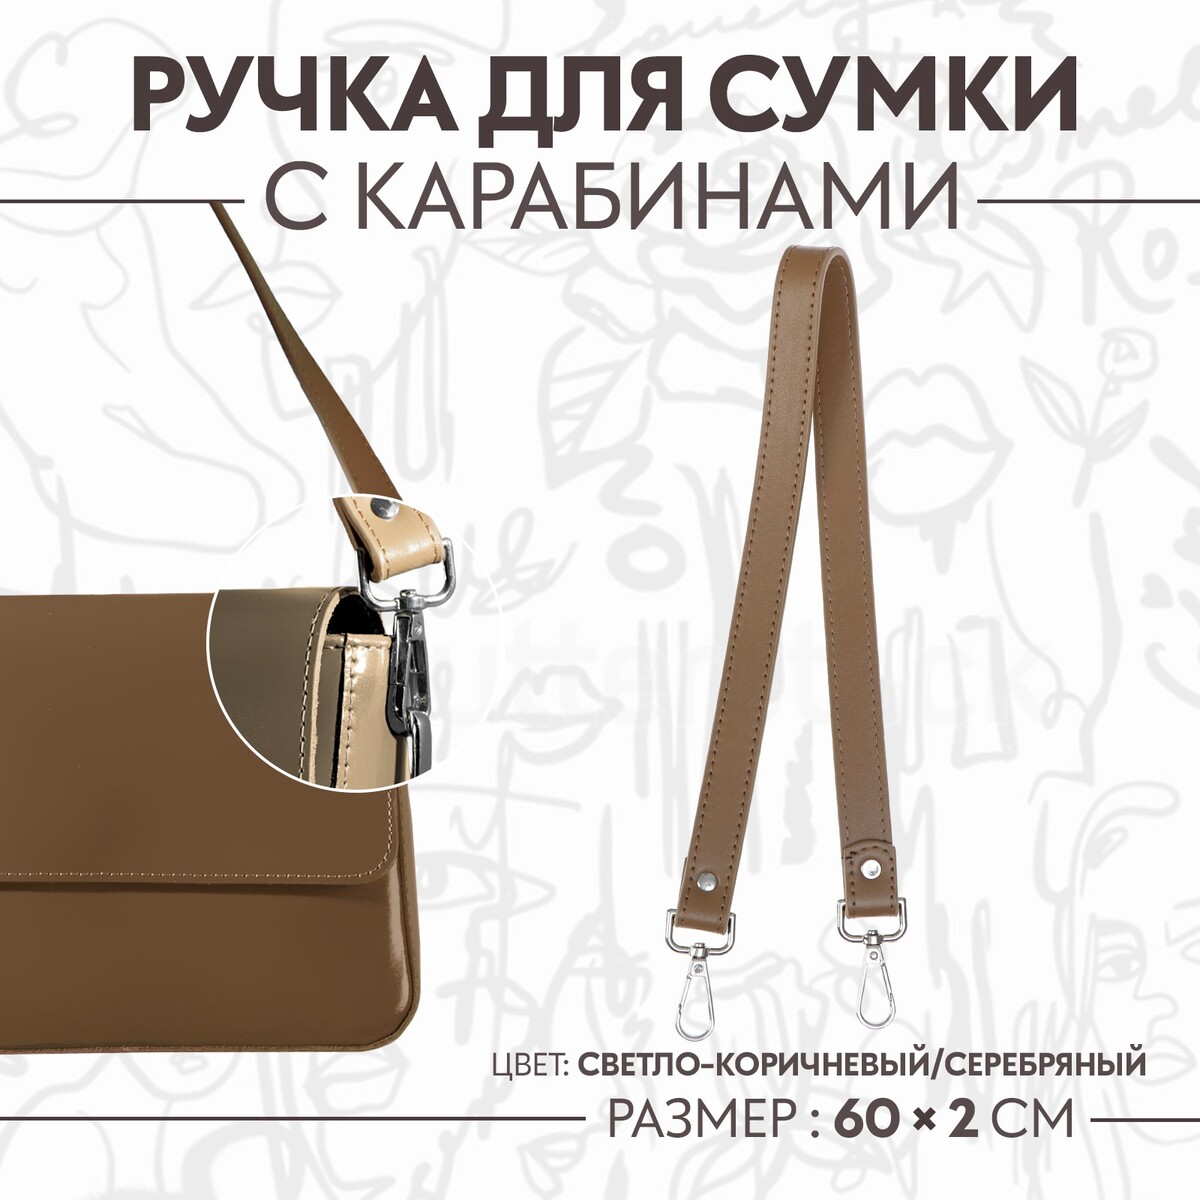 Ручка для сумки, с карабинами, 60 × 2 см, цвет светло-коричневый ручка для сумки с карабинами 60 ± 1 см × 2 см светло коричневый